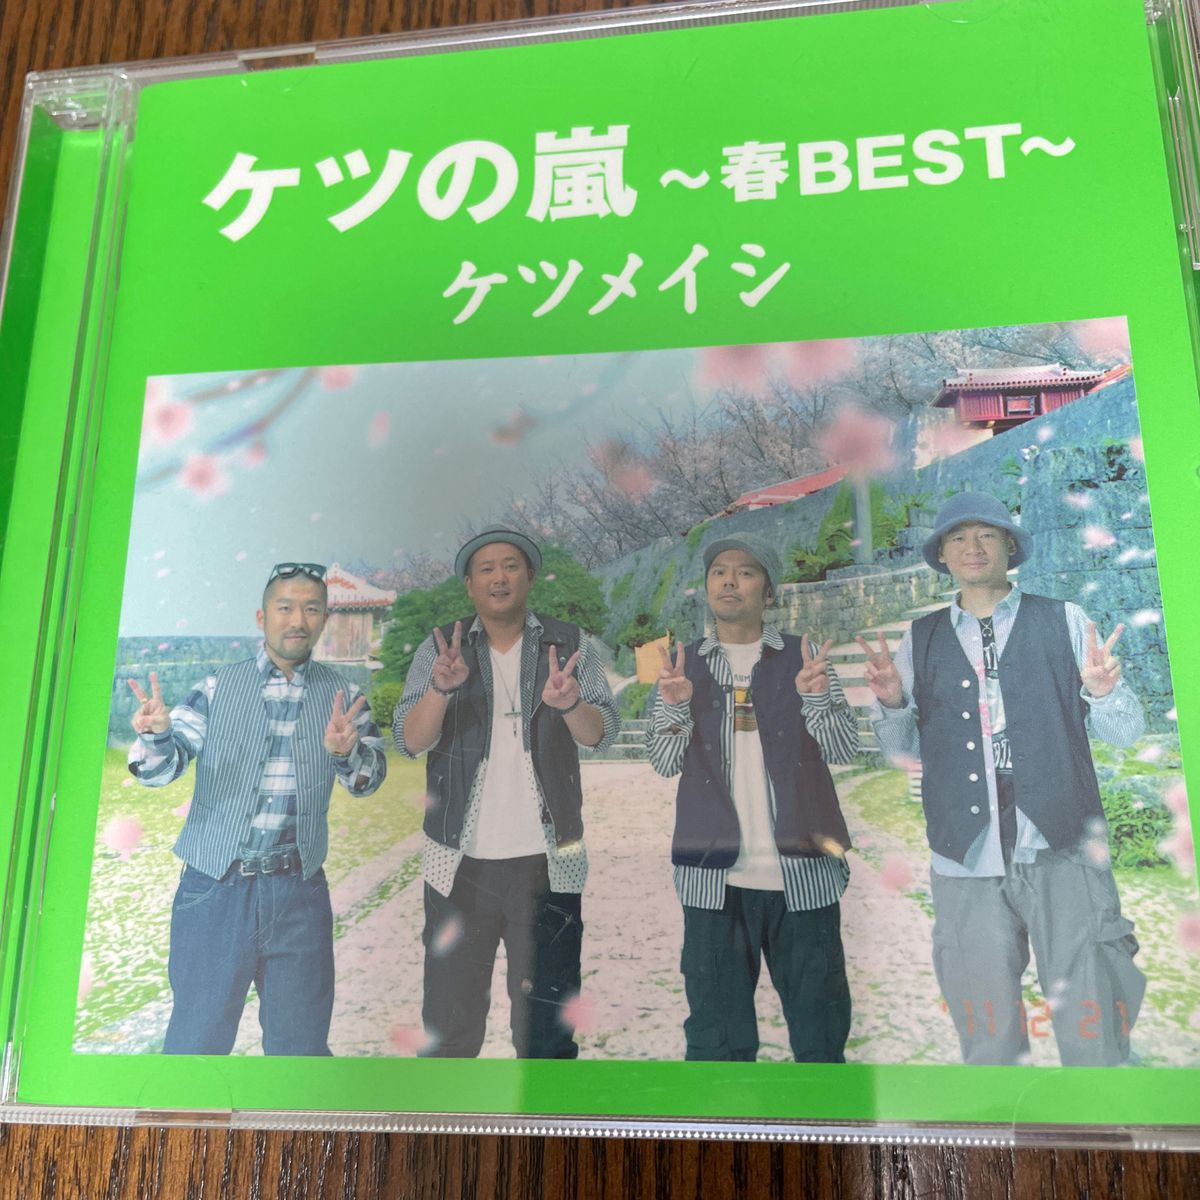 ケツの嵐〜春BEST〜 【応募券無し】 (通常盤)